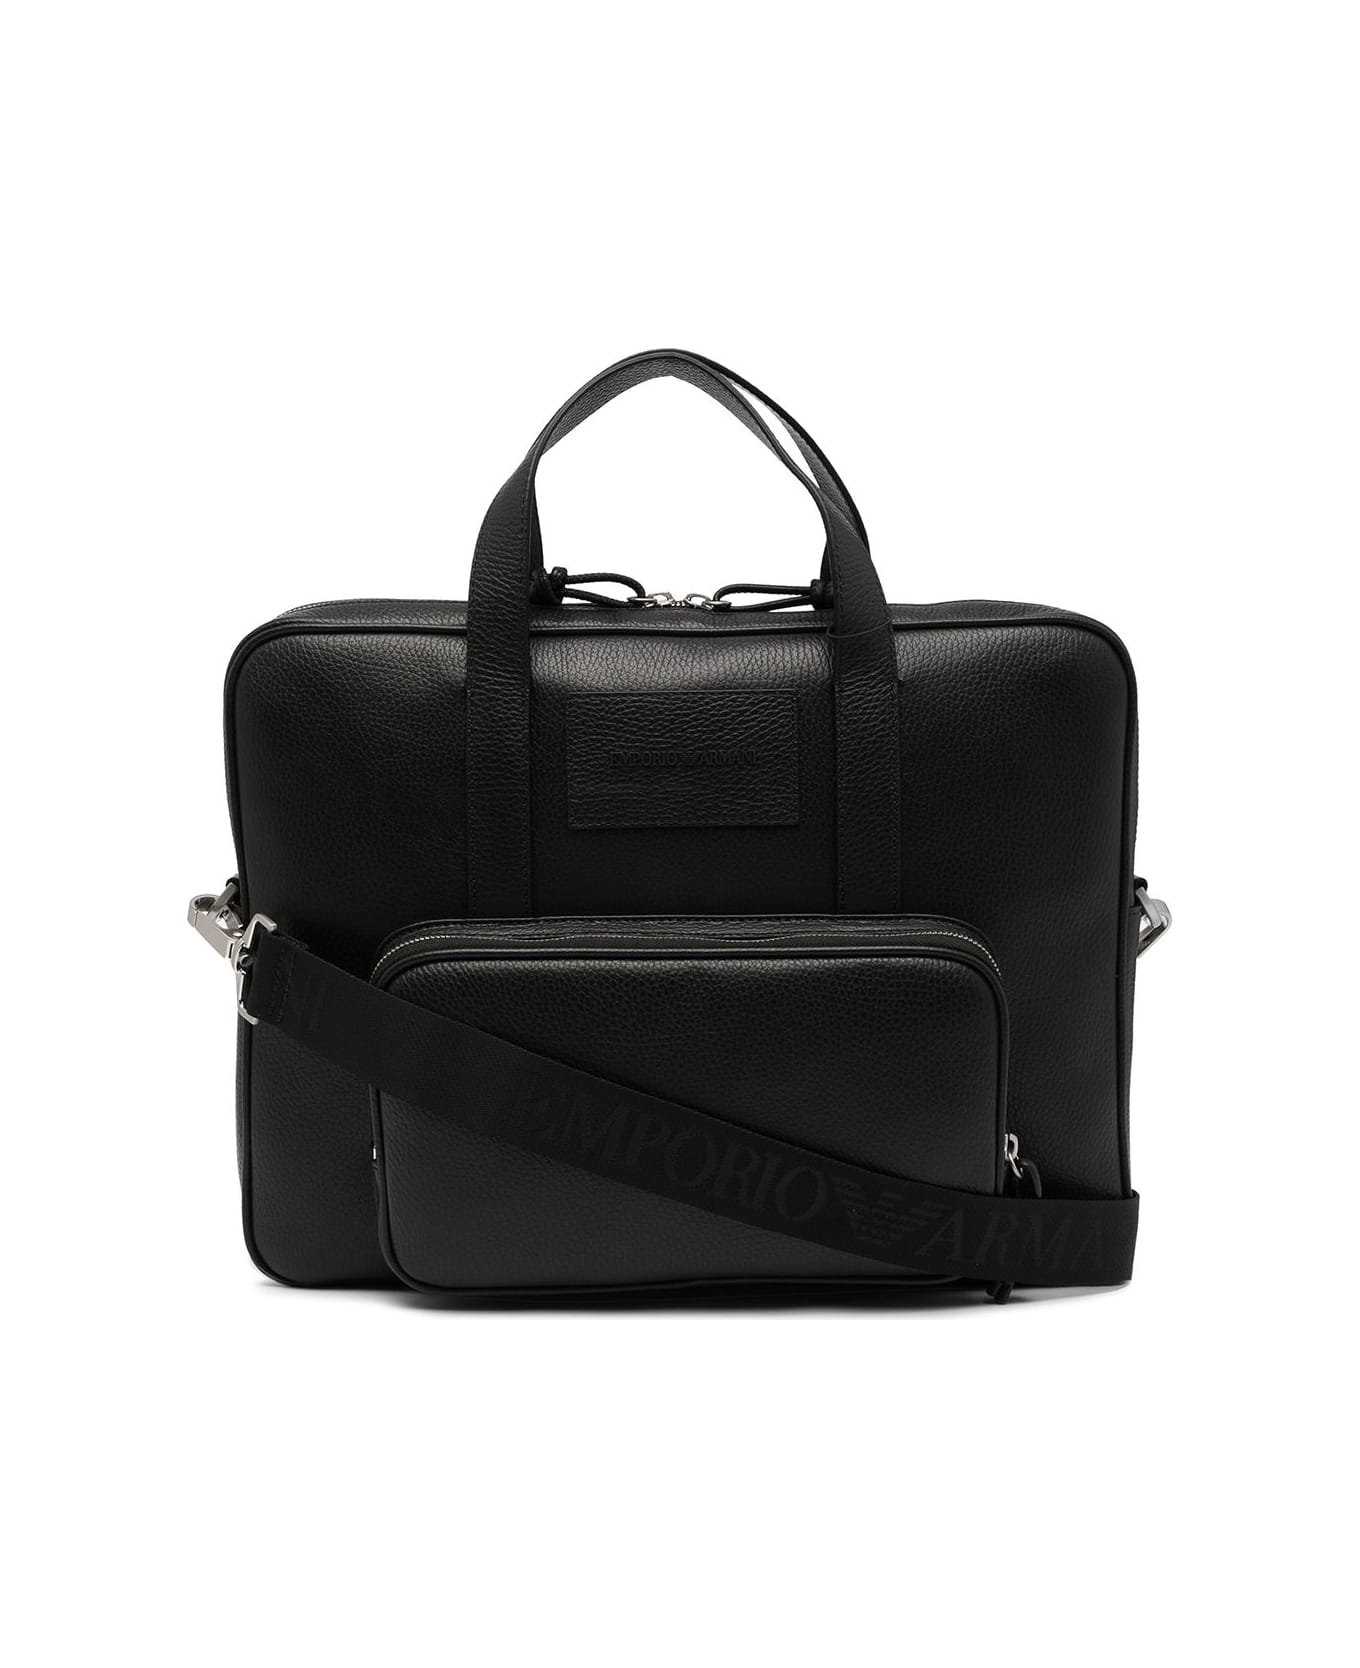 Emporio Armani Briefcase - Black